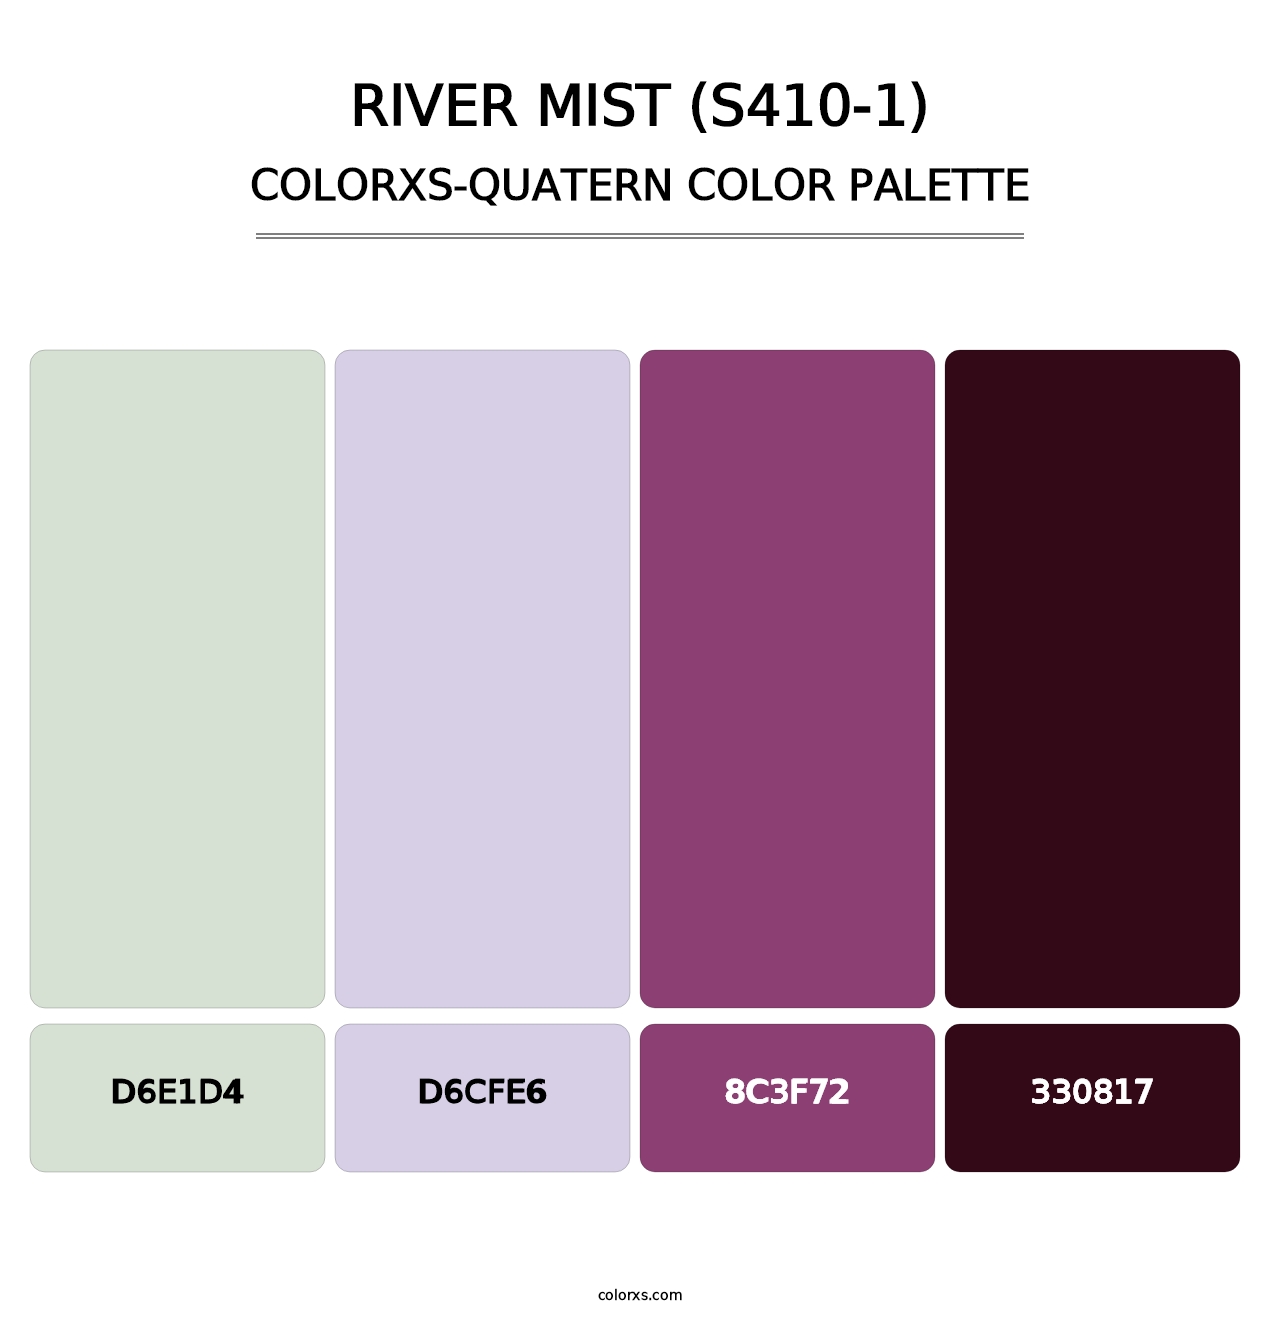 River Mist (S410-1) - Colorxs Quatern Palette